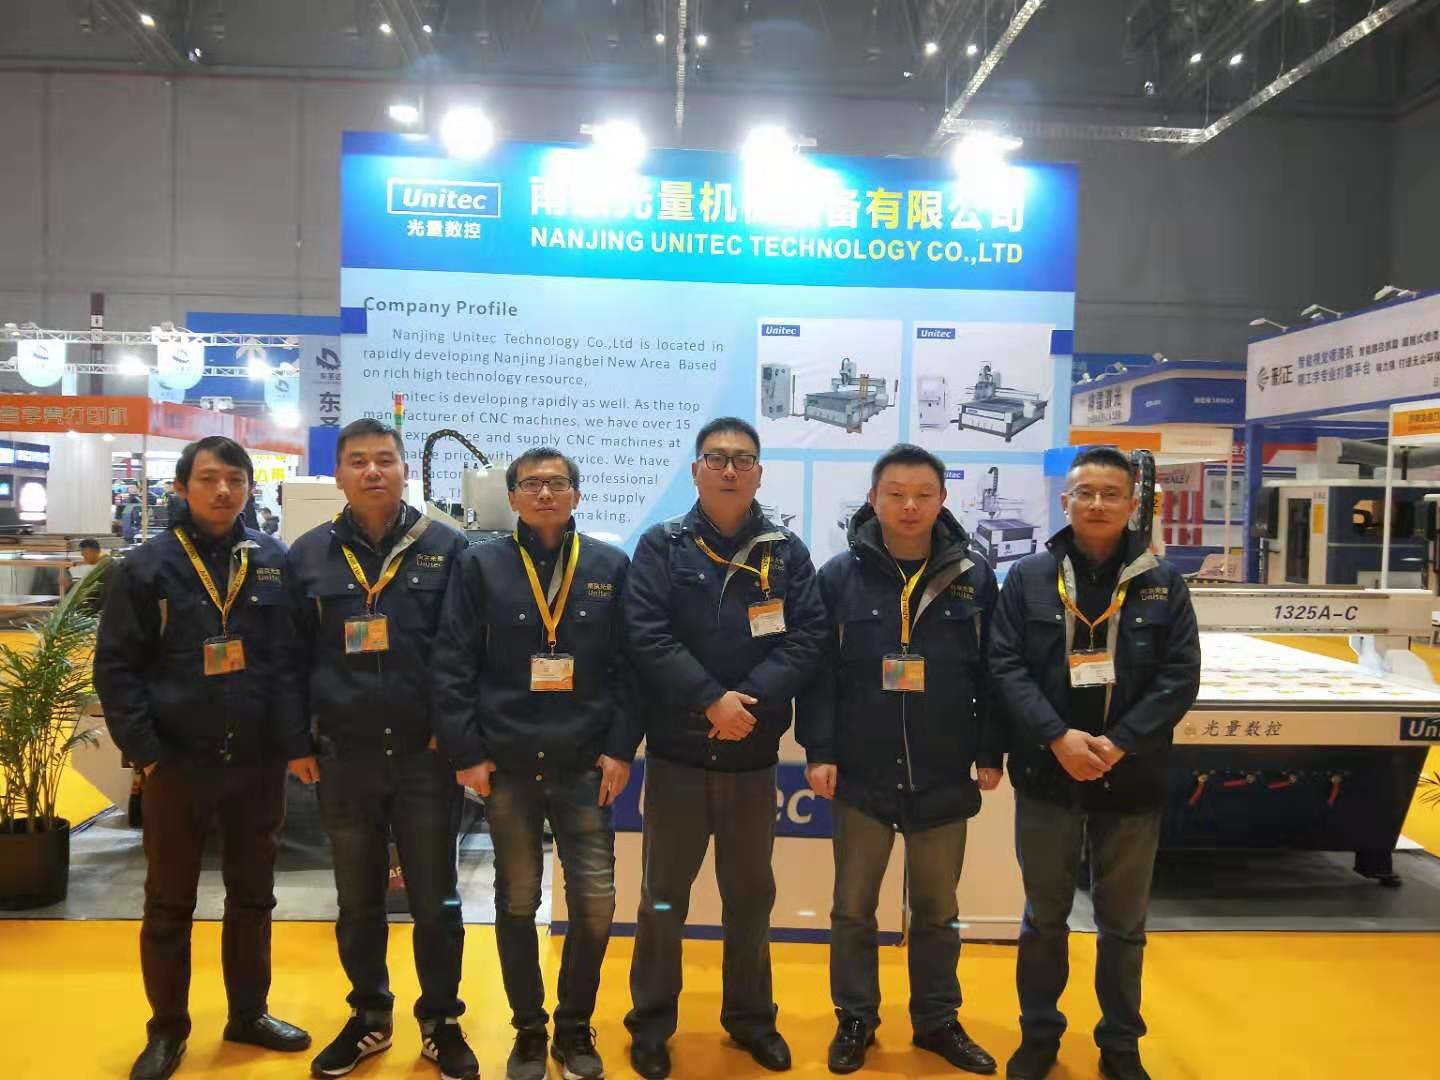 চীন Nanjing Unitec Technology Co., Ltd. সংস্থা প্রোফাইল